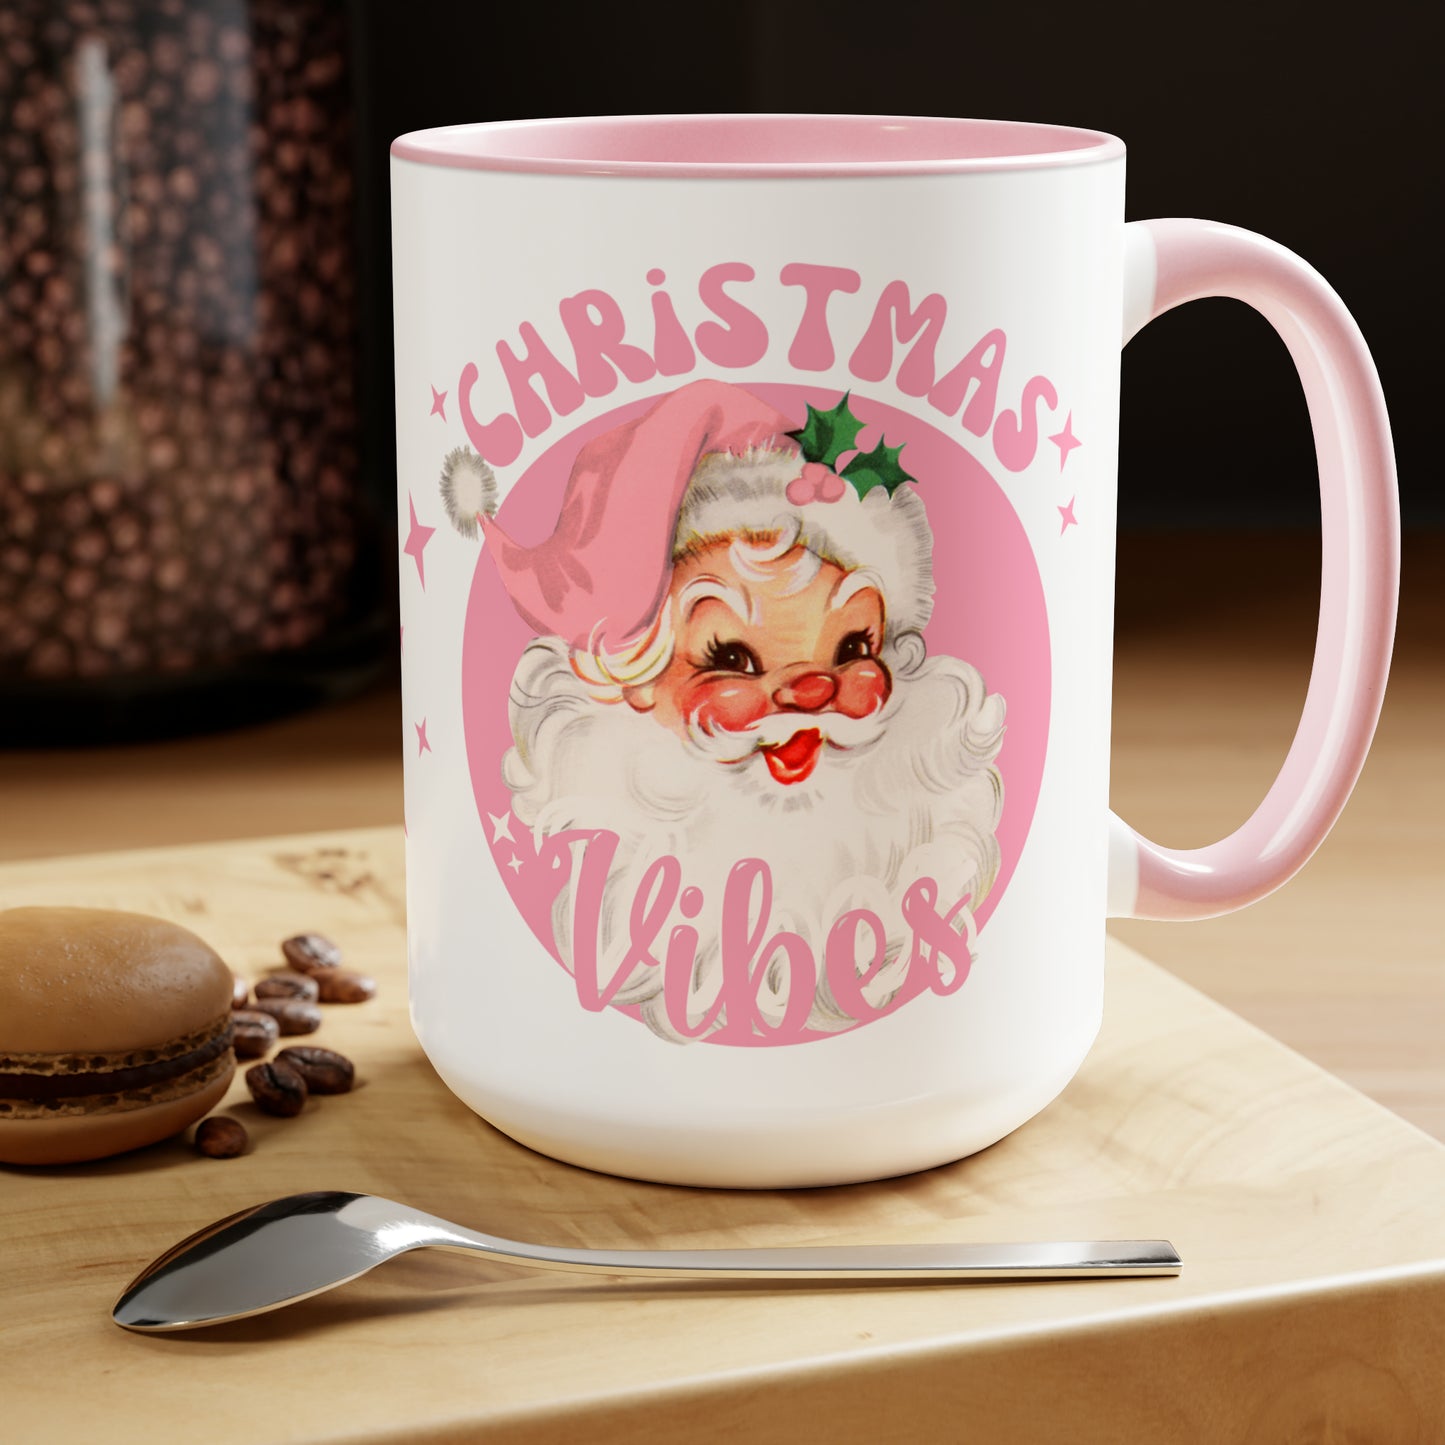 Christmas Vibes - Coffee Mug